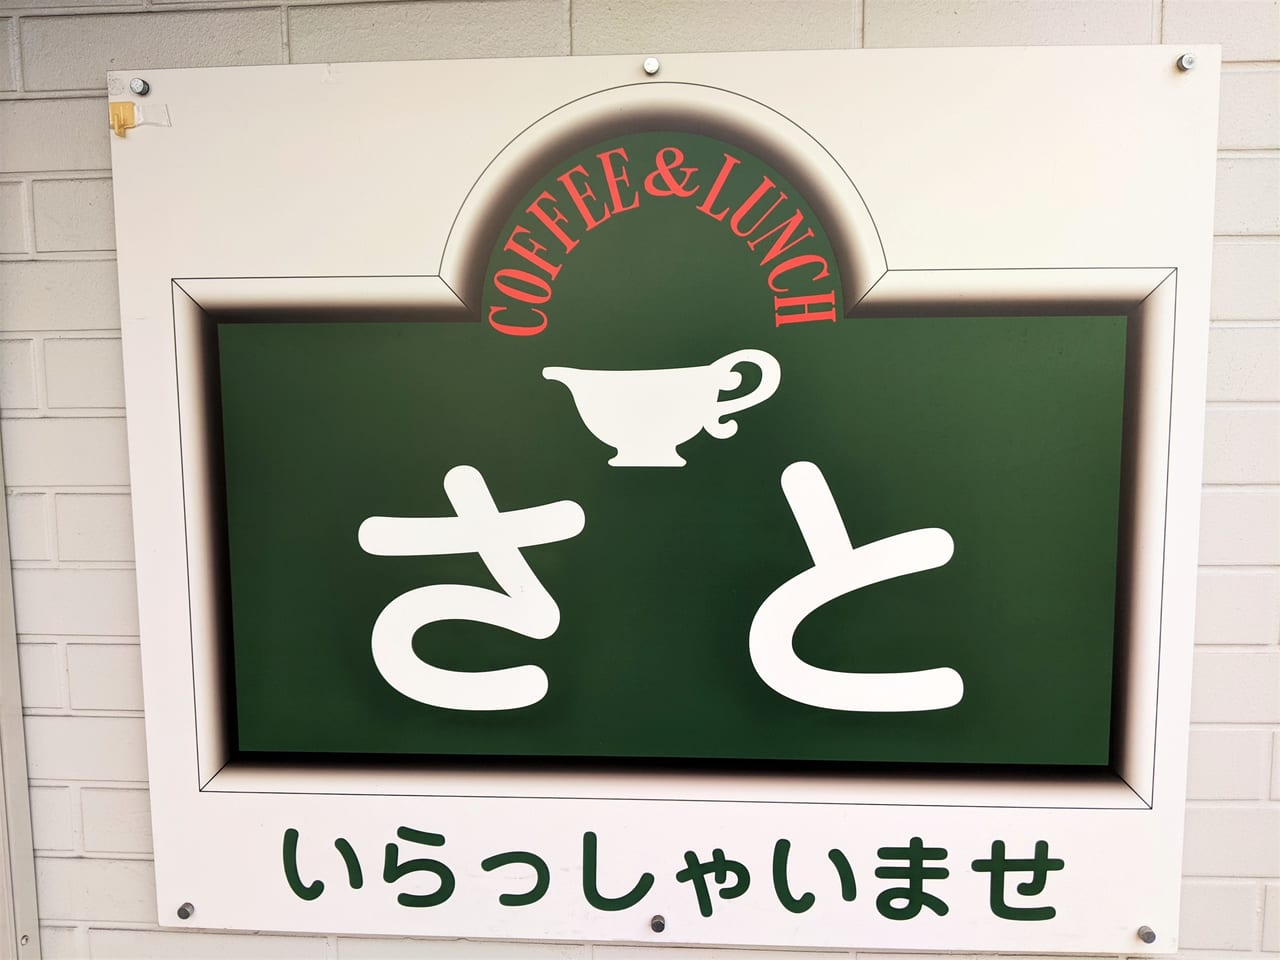 「食事・喫茶 さと」の看板